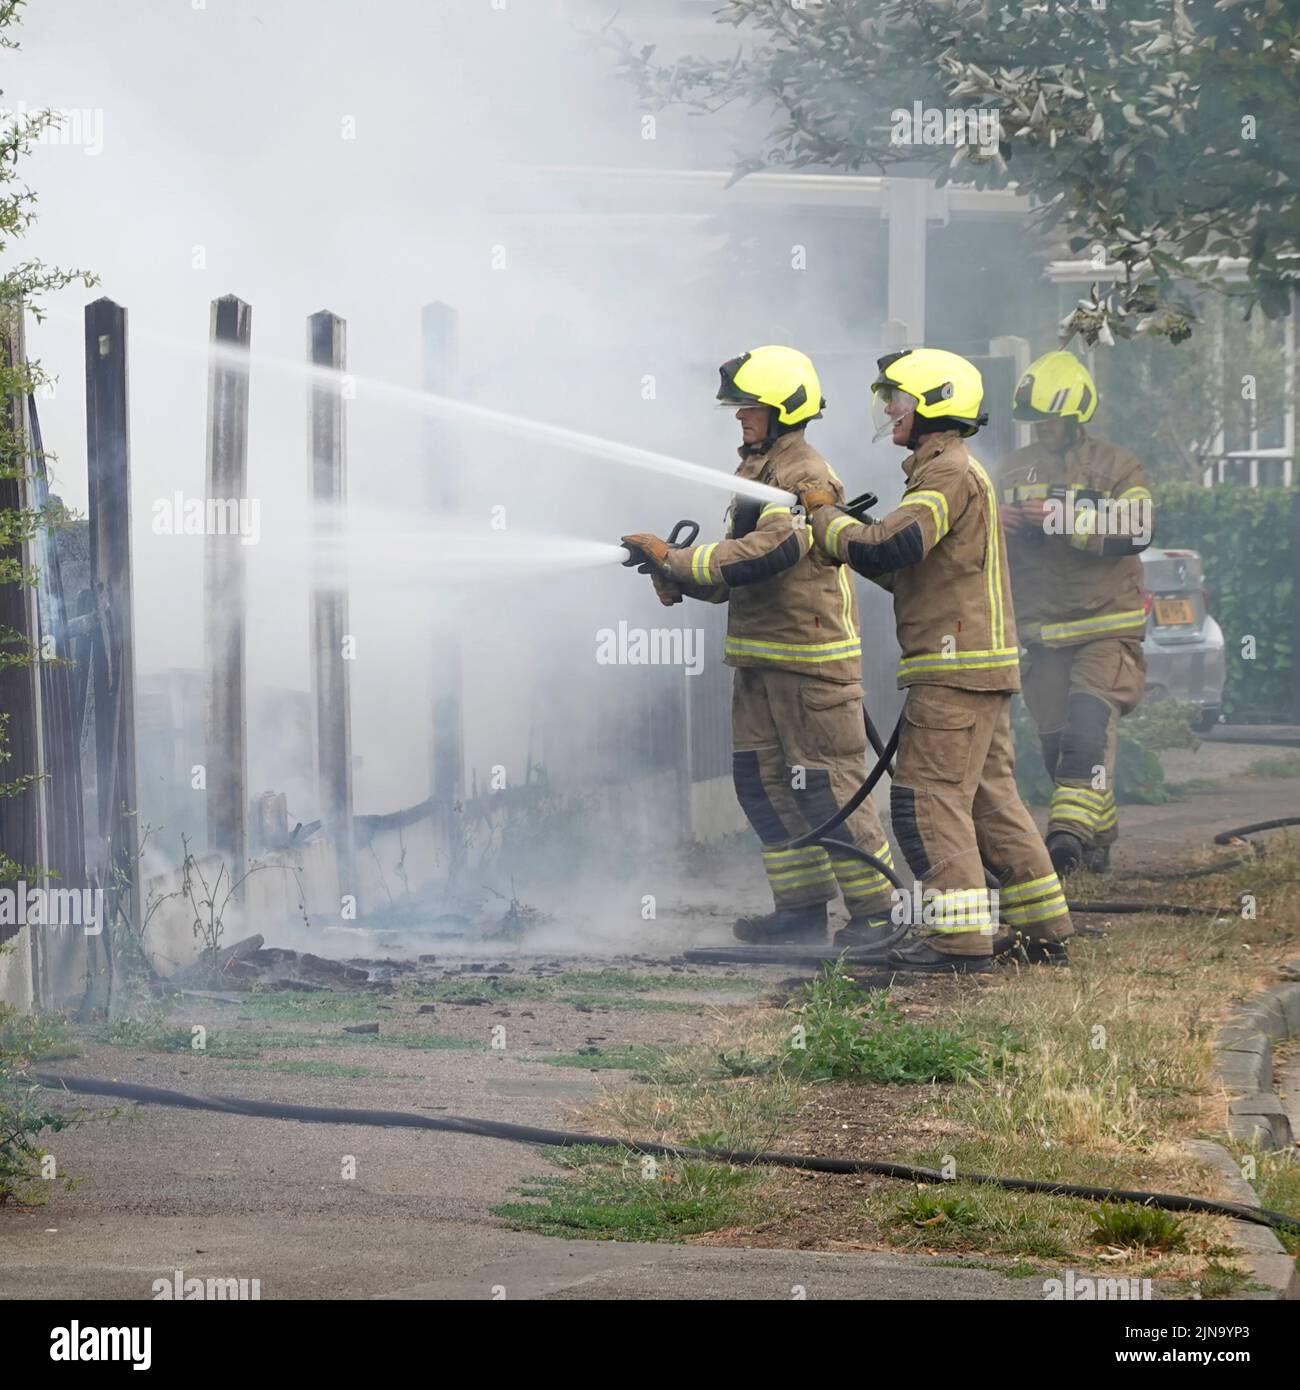 Essex Fire and Rescue Service grupo de bomberos en ropa de protección peligrosa y peligrosa casa de trabajo fuego trabajando con mangueras de agua Inglaterra Reino Unido Foto de stock